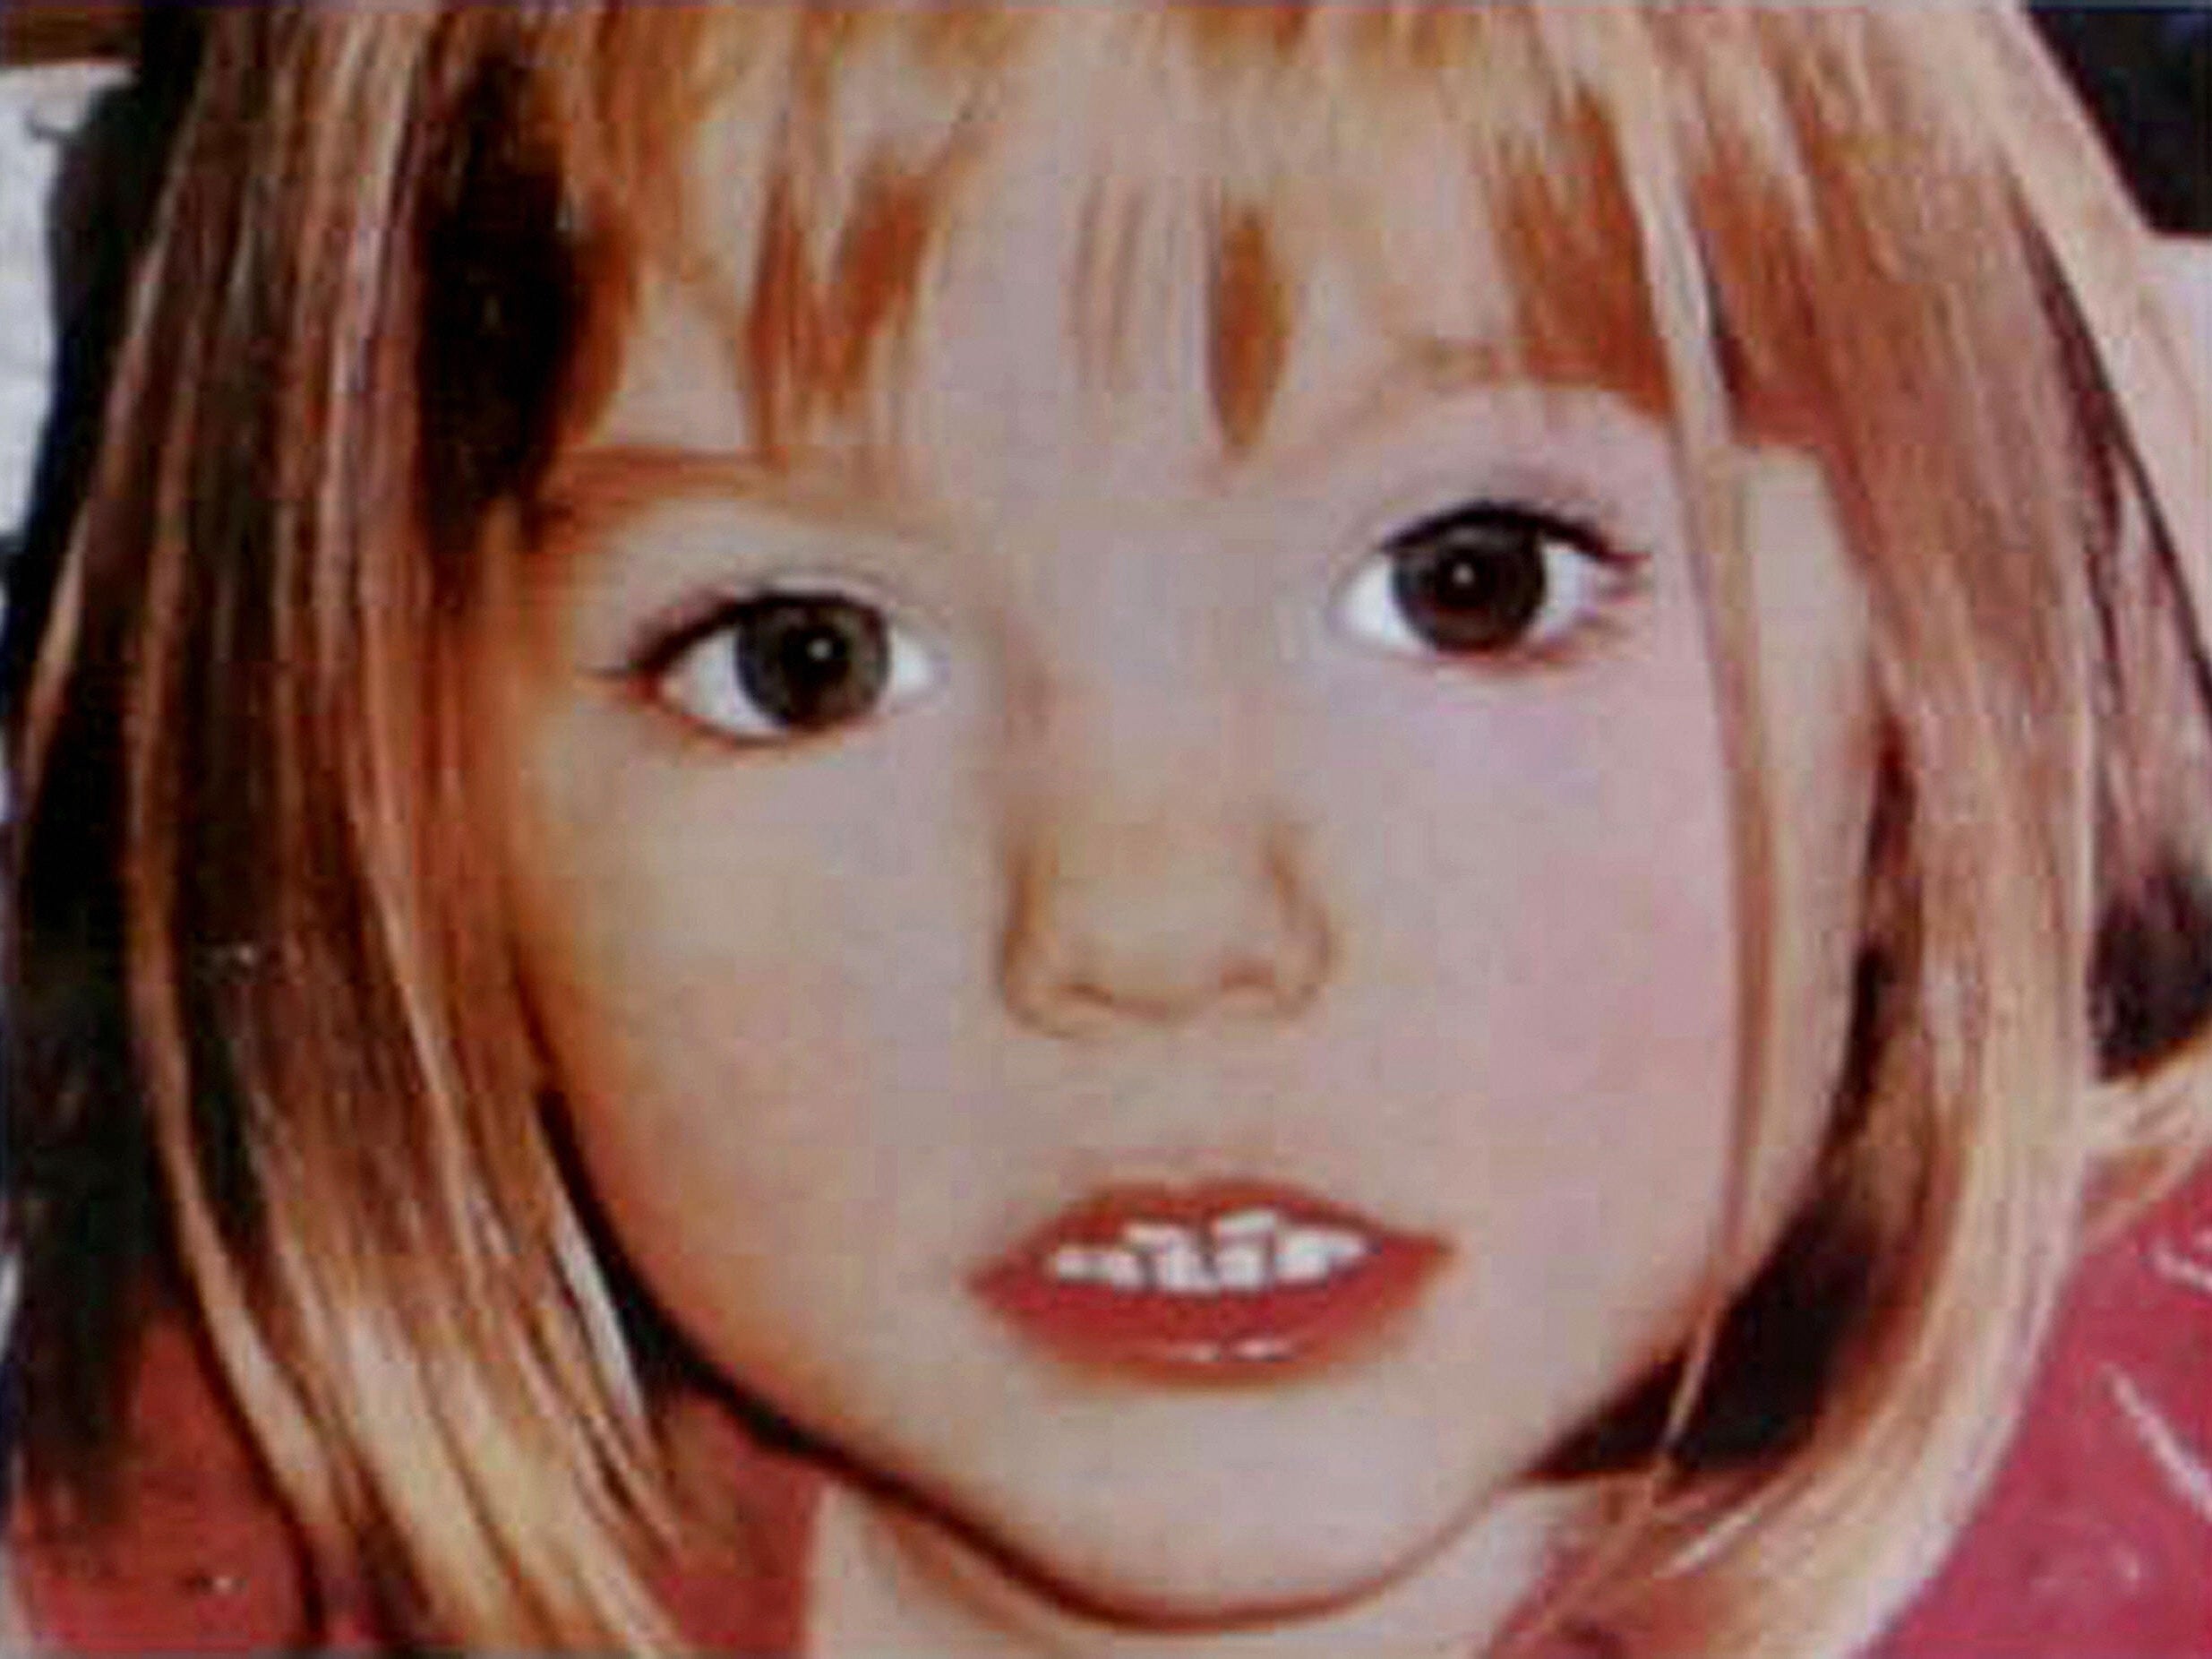 Madeleine McCann went missing in 2007